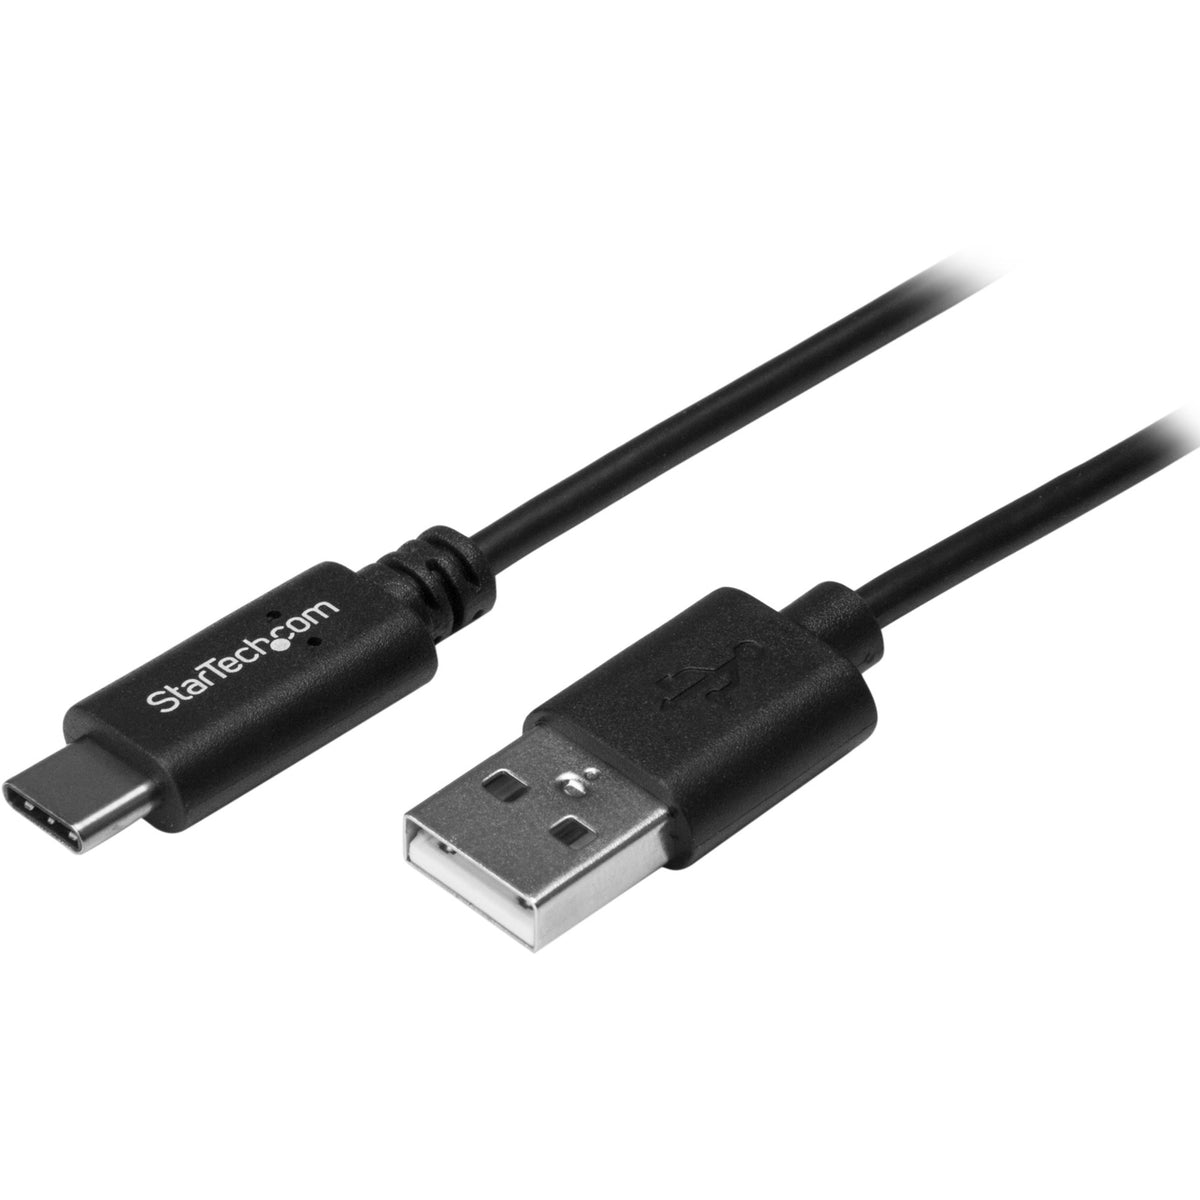 StarTech.com 0.5m USB C to USB A Cable - M/M - USB 2.0 - USB-C Charger Cable - USB 2.0 Type C to Type A Cable - USB2AC50CM